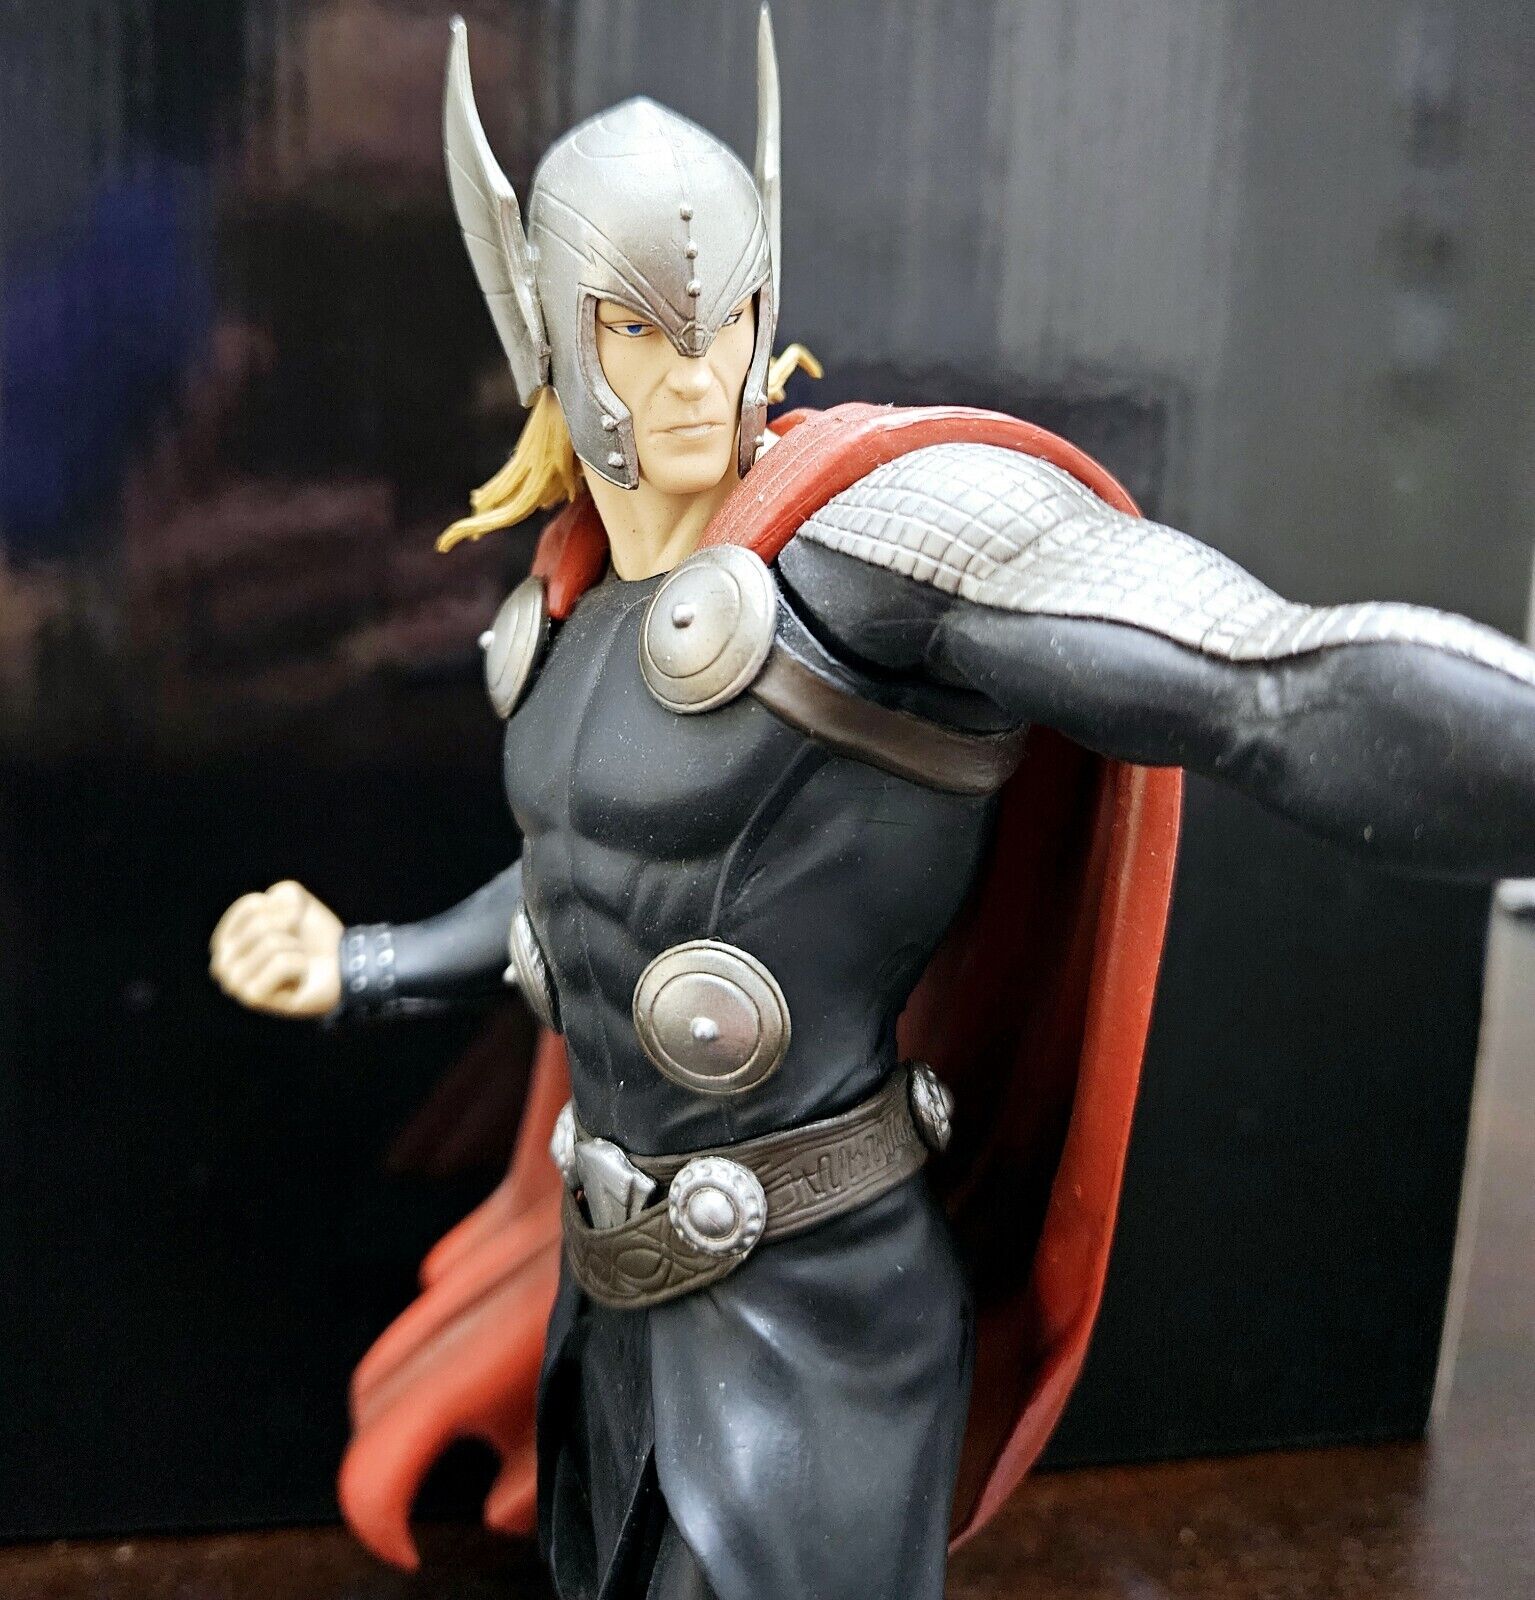 Kotobukiya Marvel Now ArtFX+ Avengers Thor Statue 1/10 Scale